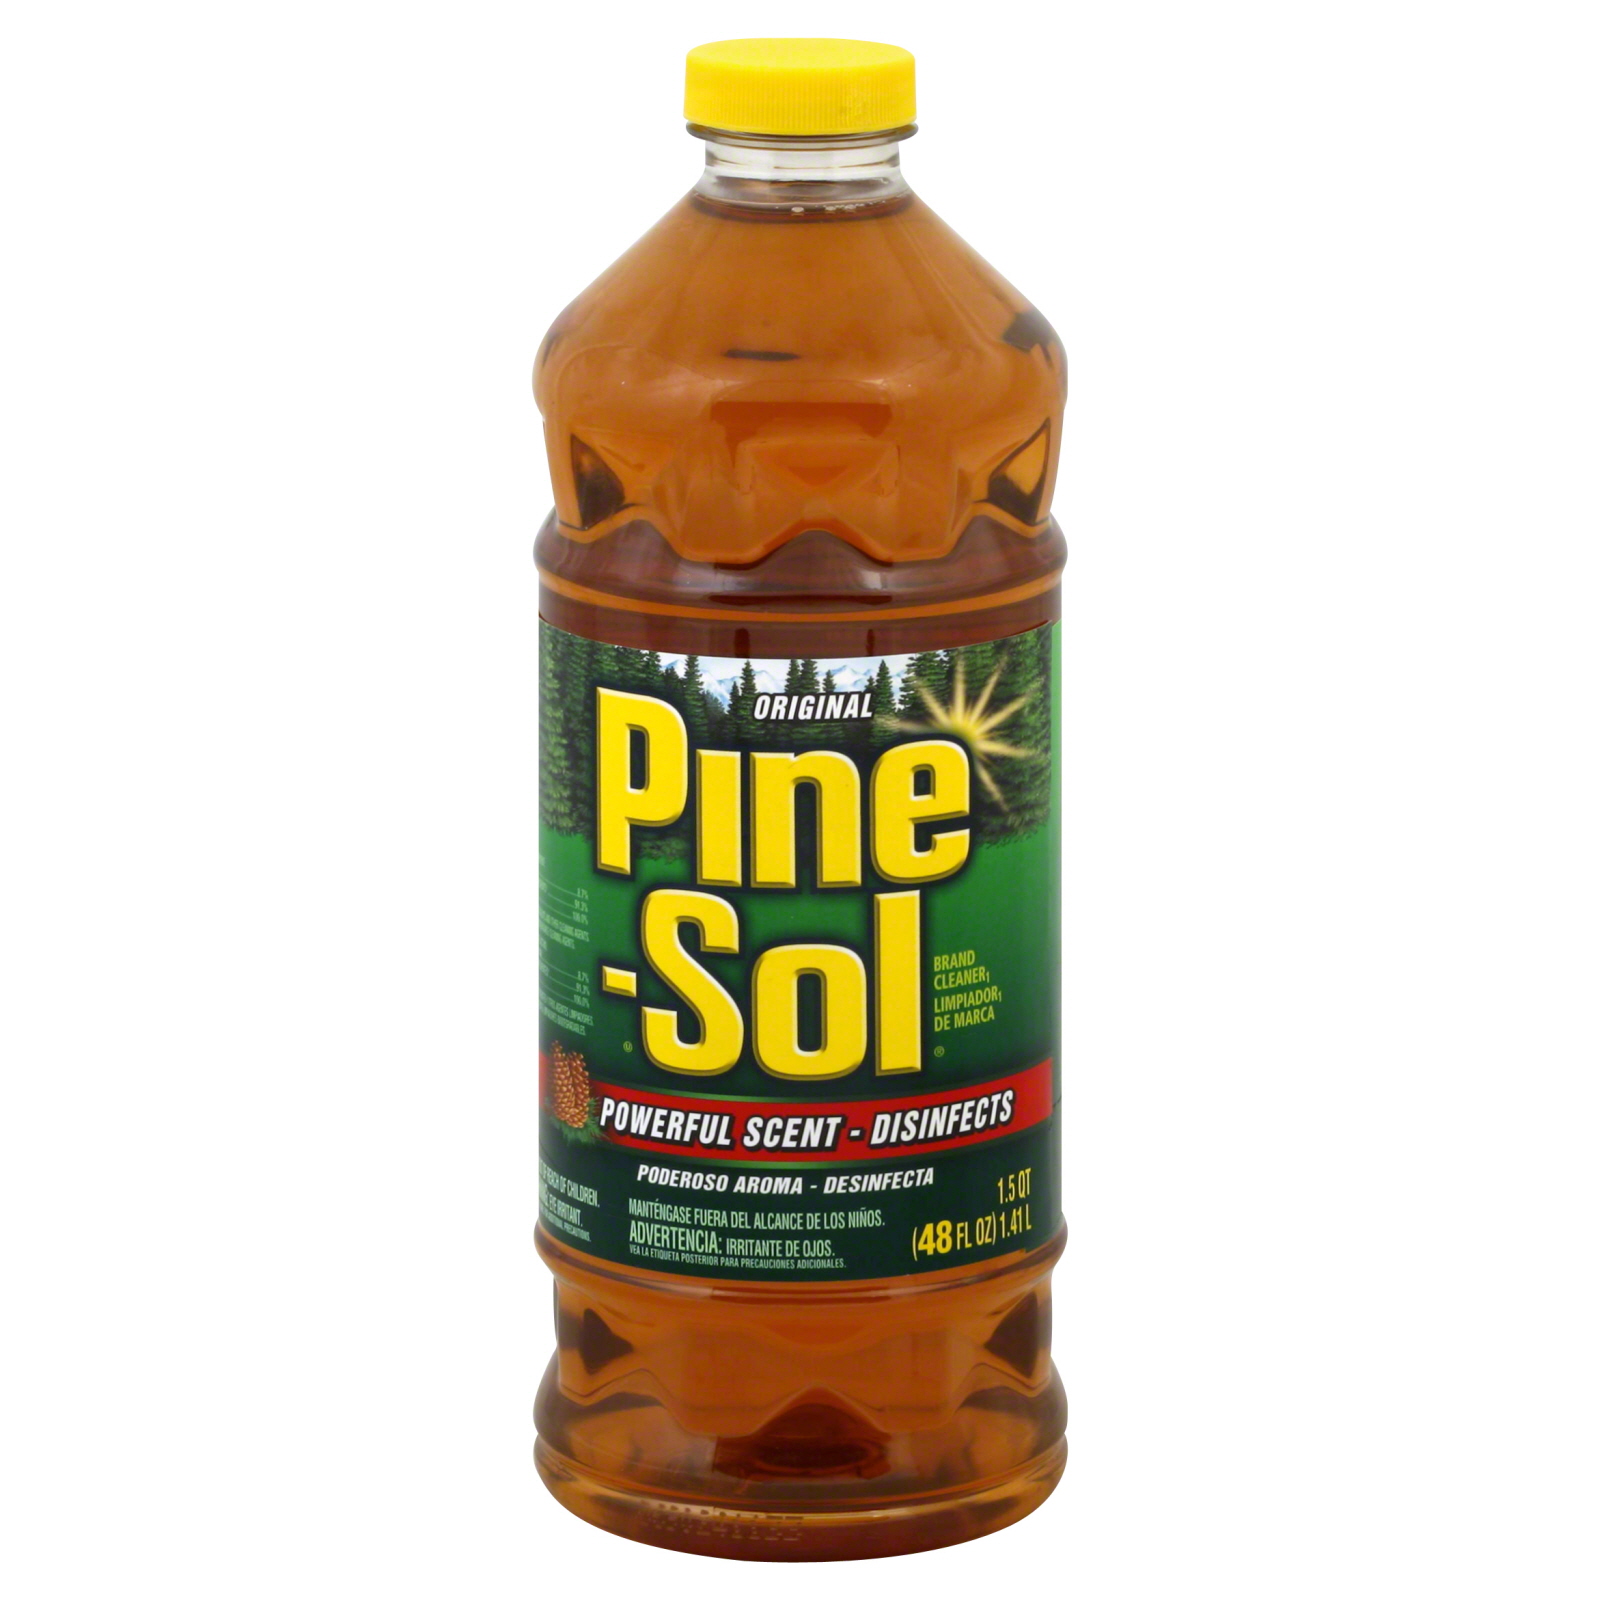 Pine-Sol Cleaner, Original, 48 fl oz (1.5 qt) 1.41 lt